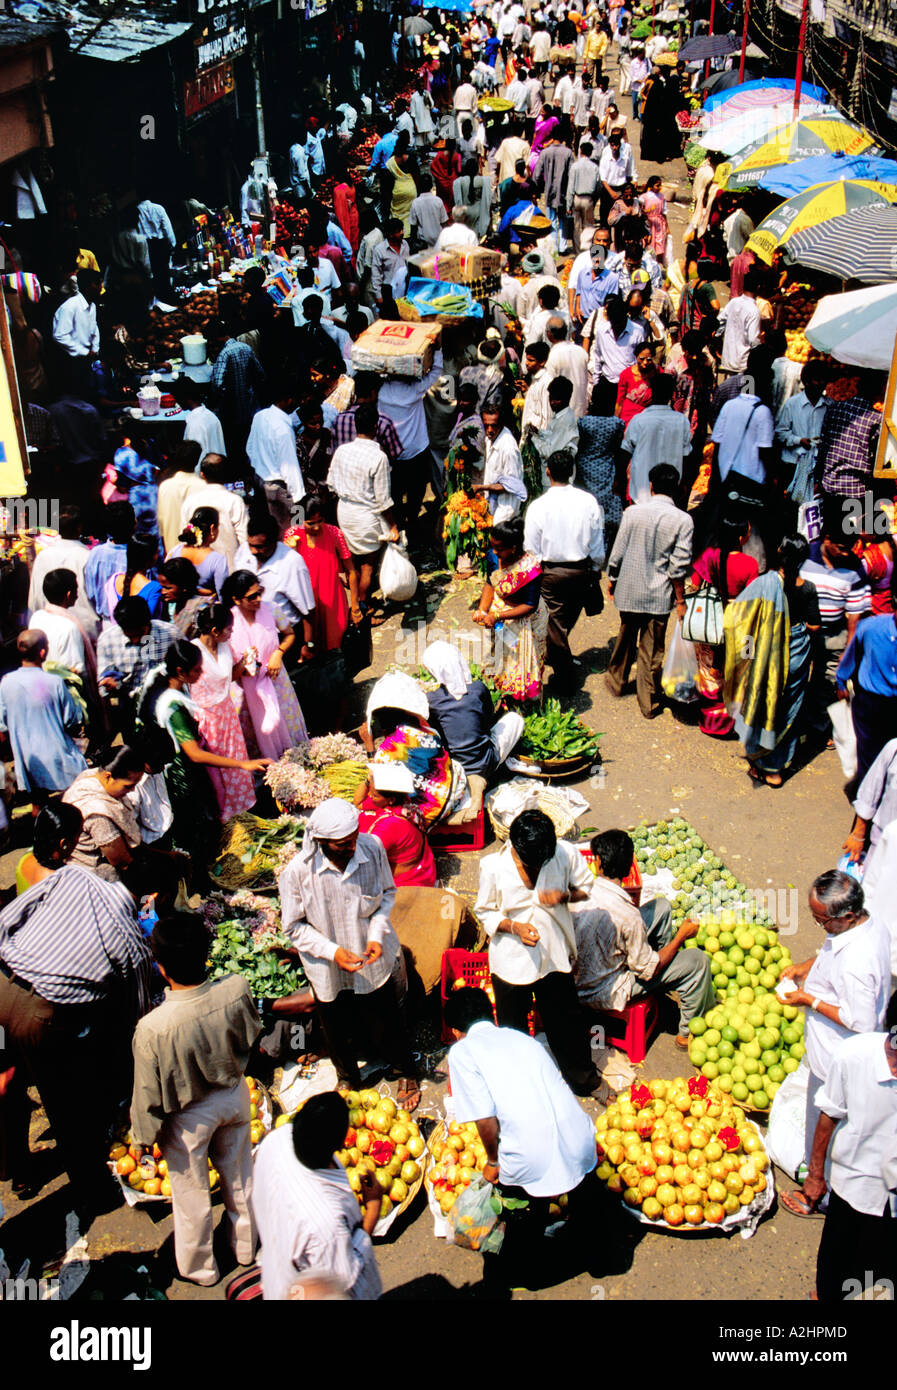 L'inimaginable buzz le marché de fruits de l'Ouest, Dadar Mumbai en ébullition la foule des acheteurs et des vendeurs. Asie Inde Banque D'Images